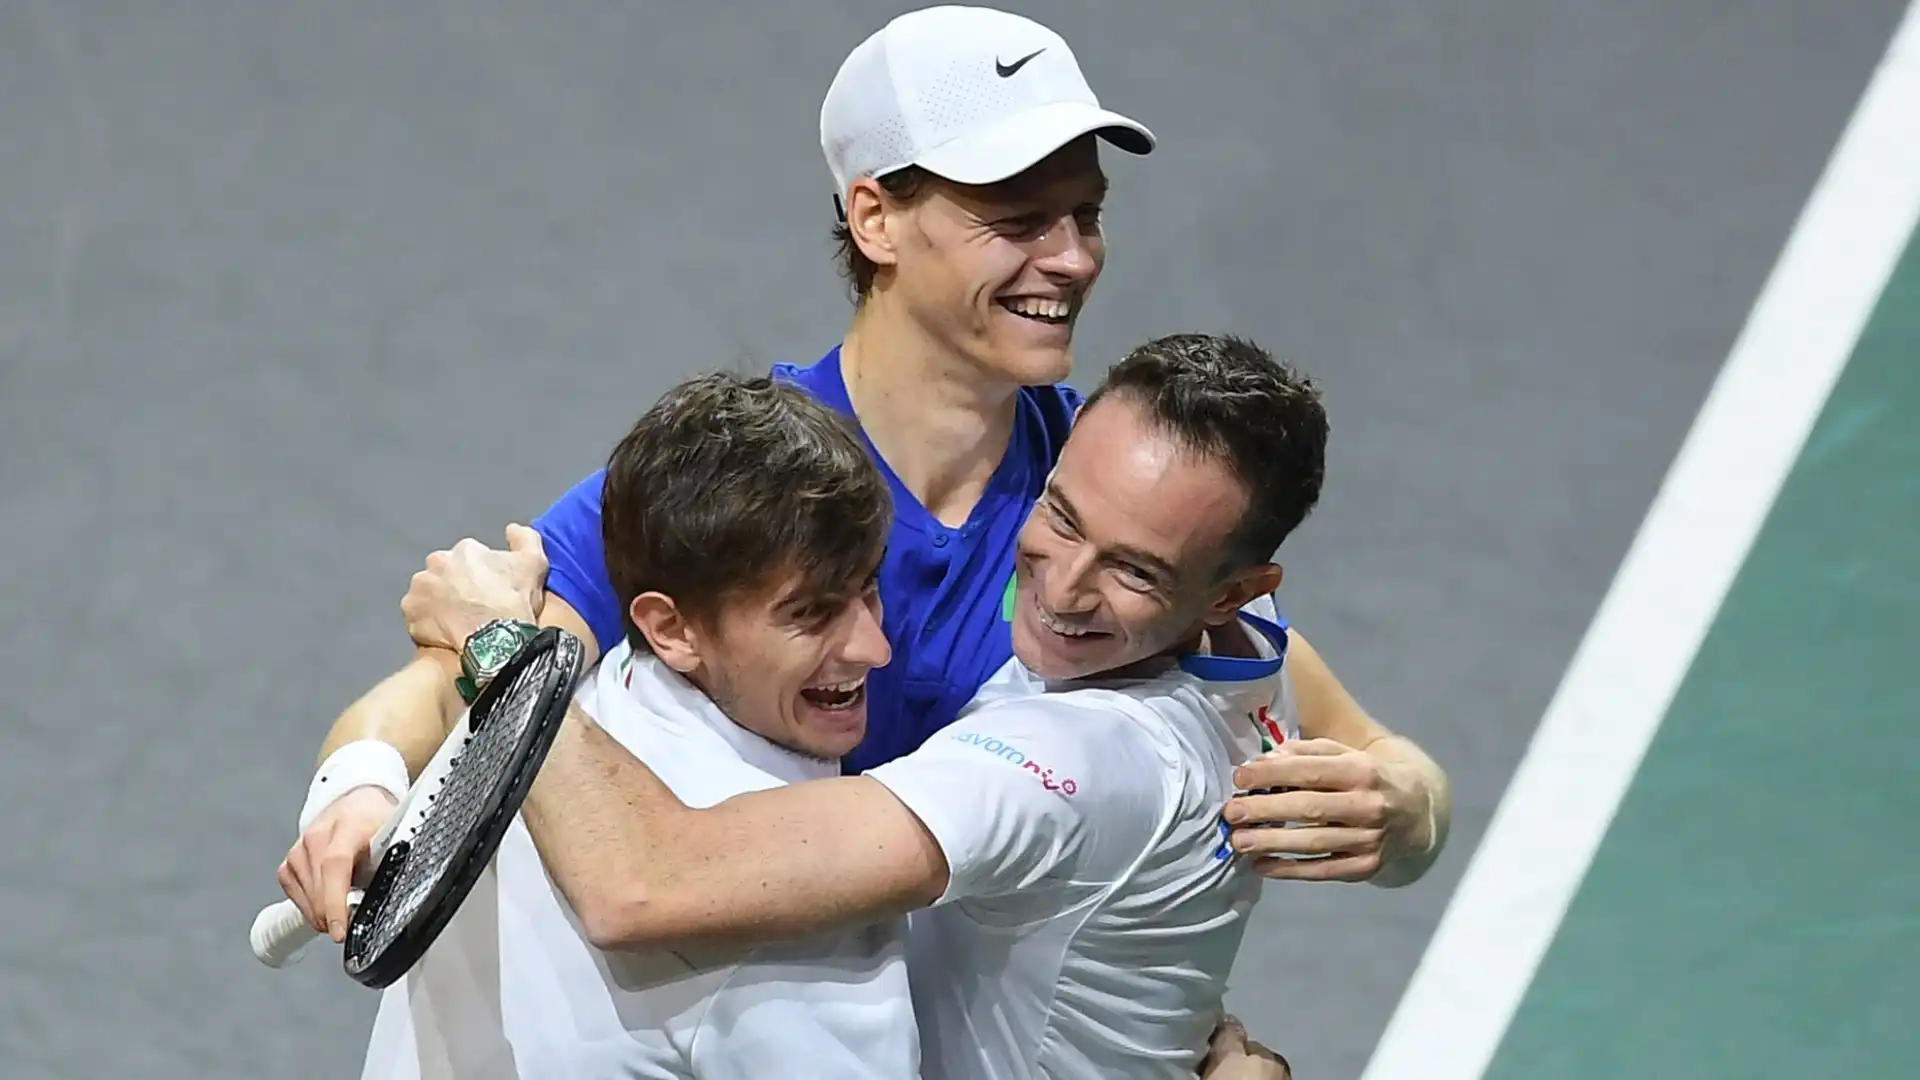 L'Italia torna a vincere la Coppa Davis dopo 47 anni di attesa